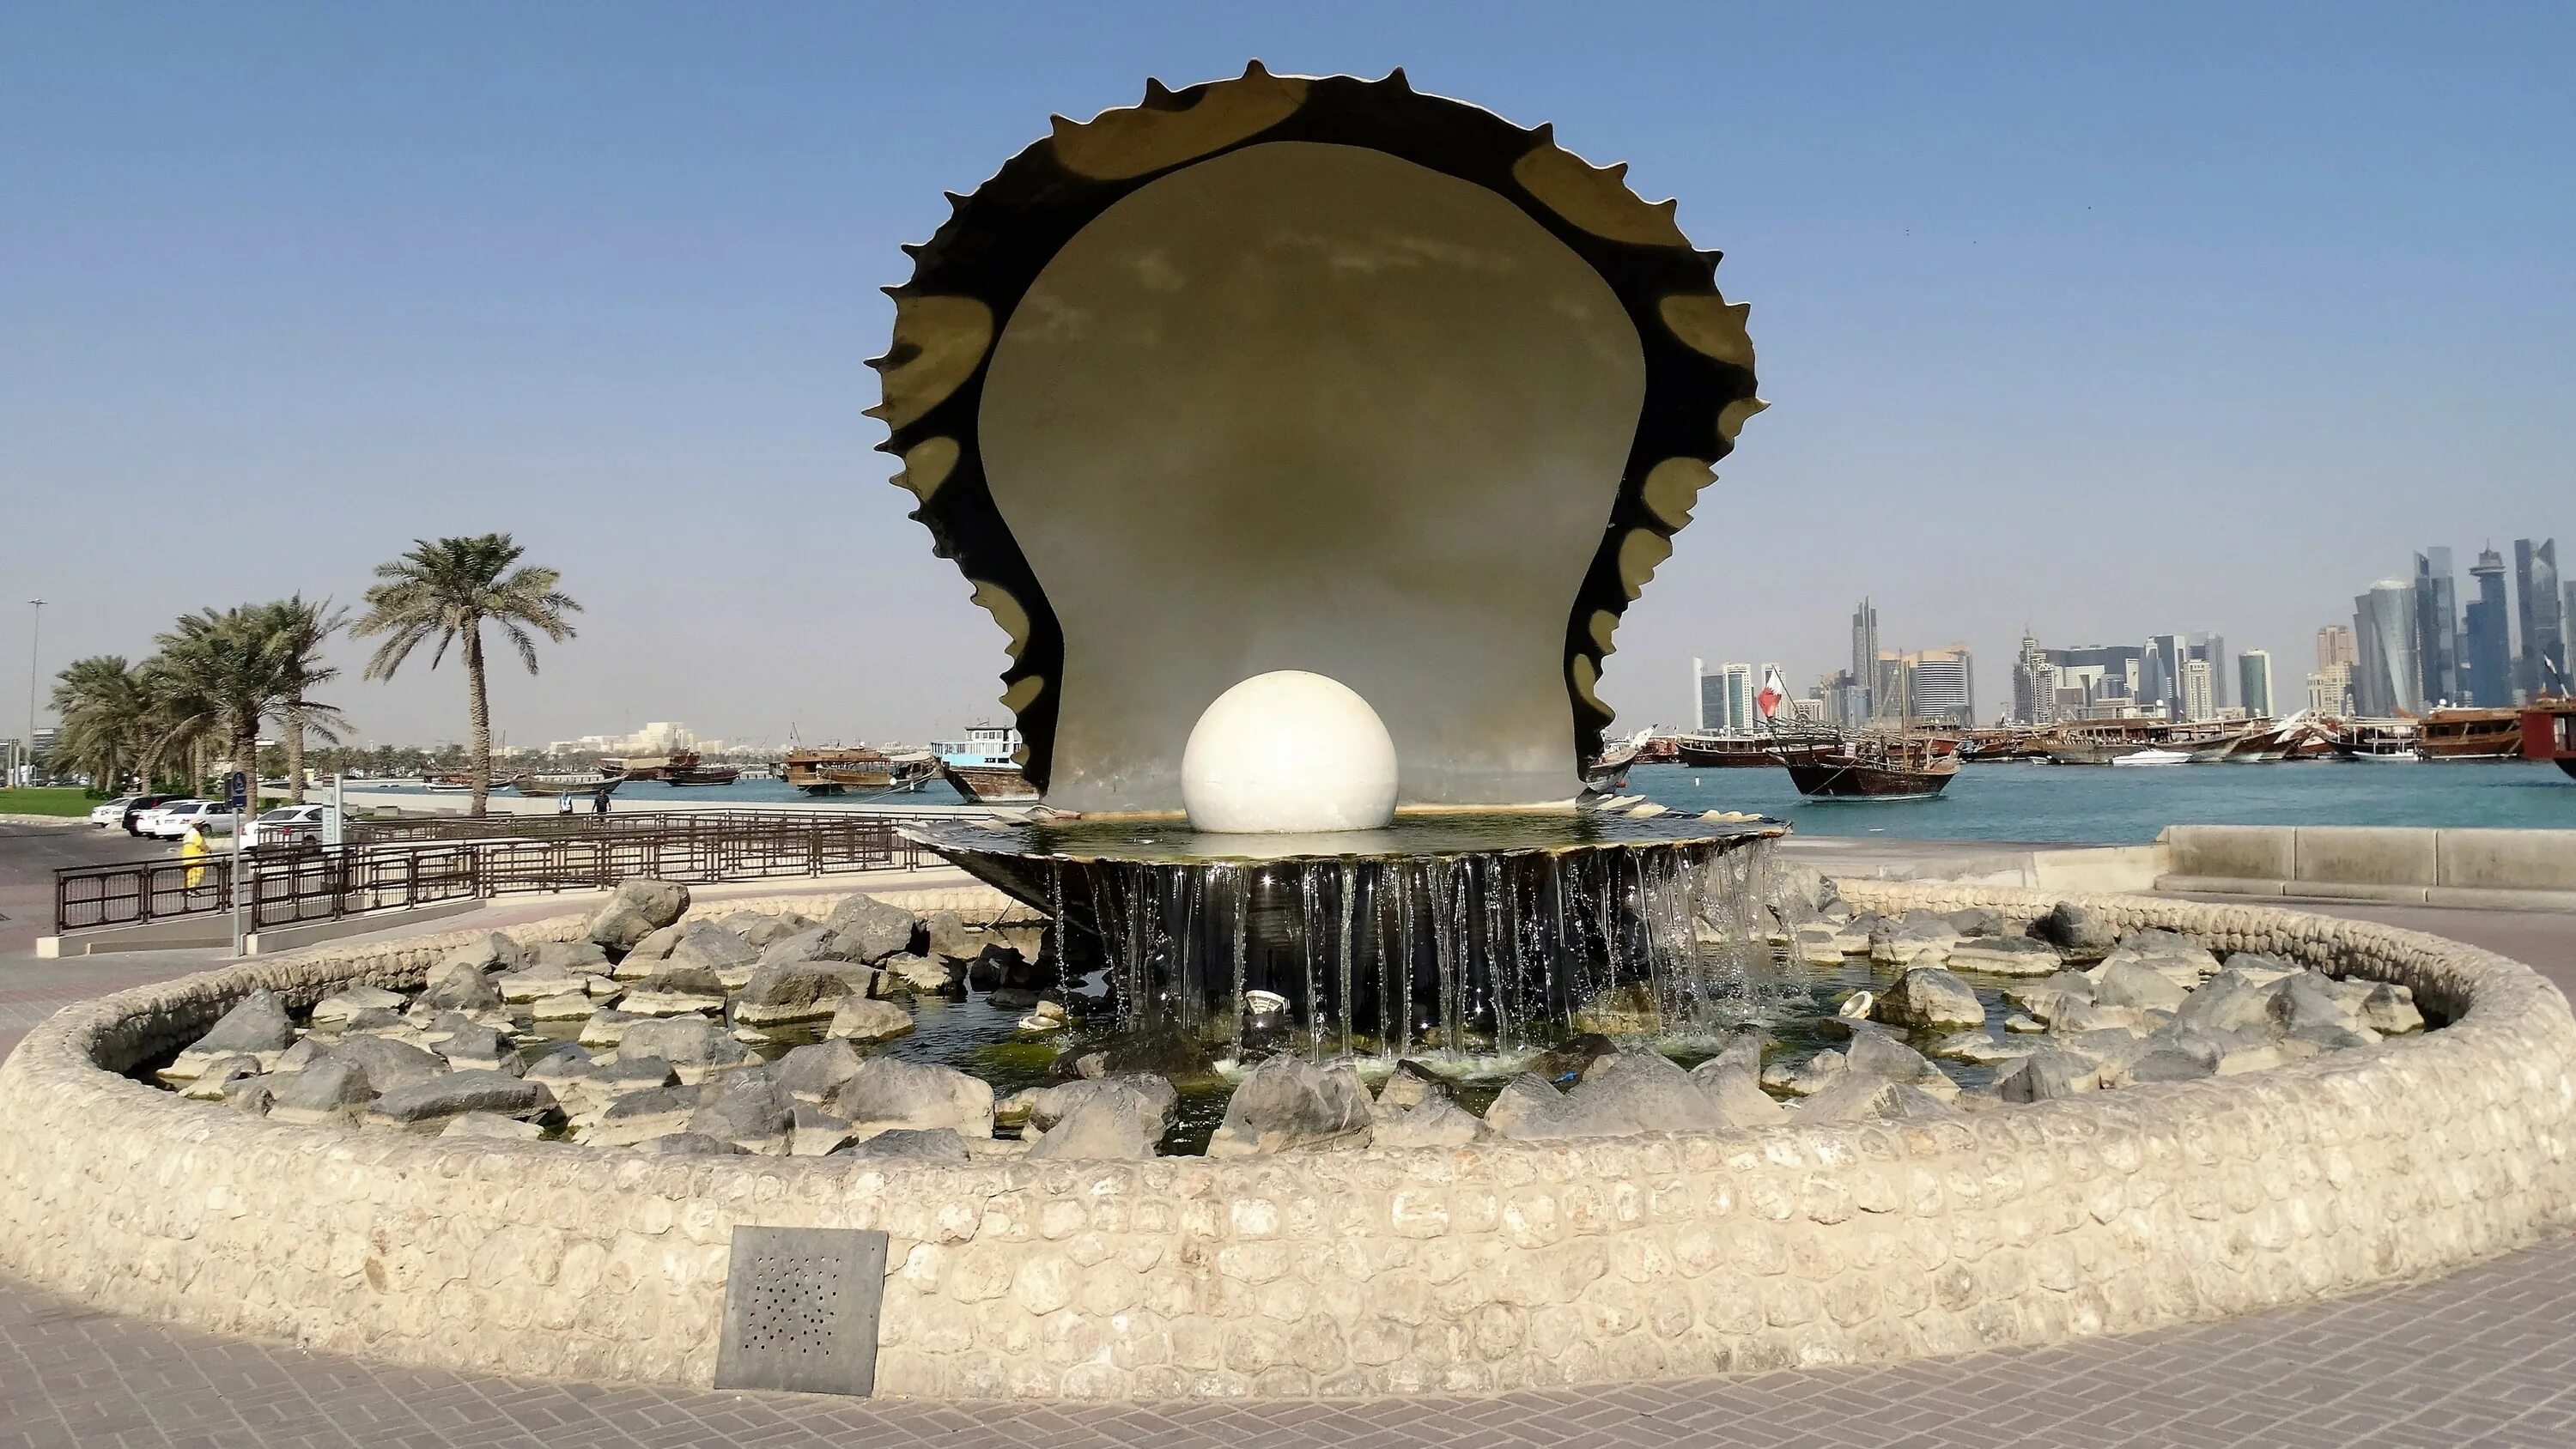 Жемчужный город страна. Жемчужина Катара в Дохе. Катар Доха фонтан Жемчужина. Жемчужина-Катар, Доха, Катар. Доха Корниш Катар.